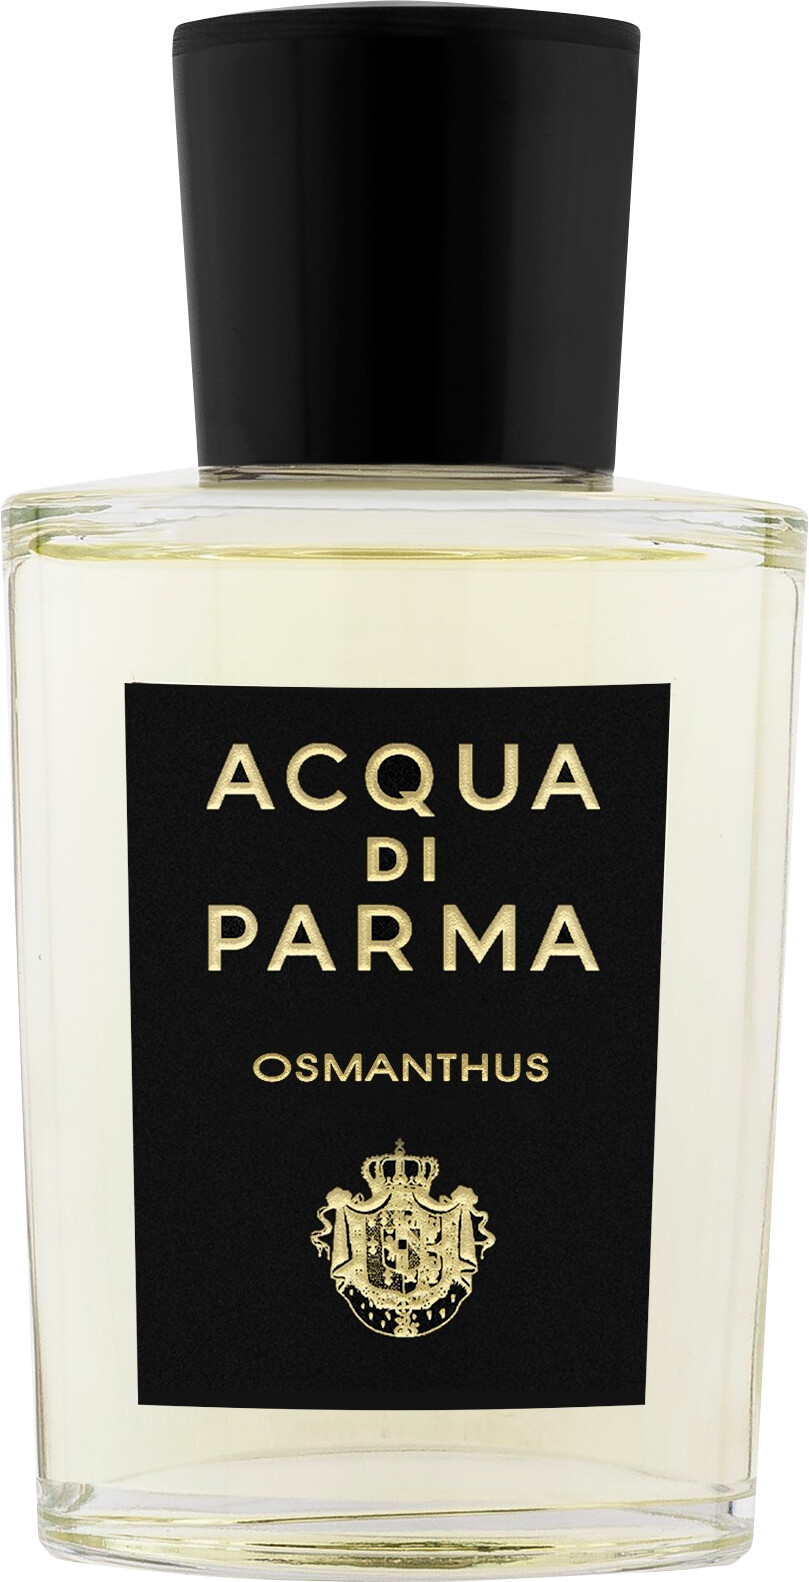 Acqua di Parma Osmanthus Eau de Parfum Spray 100ml